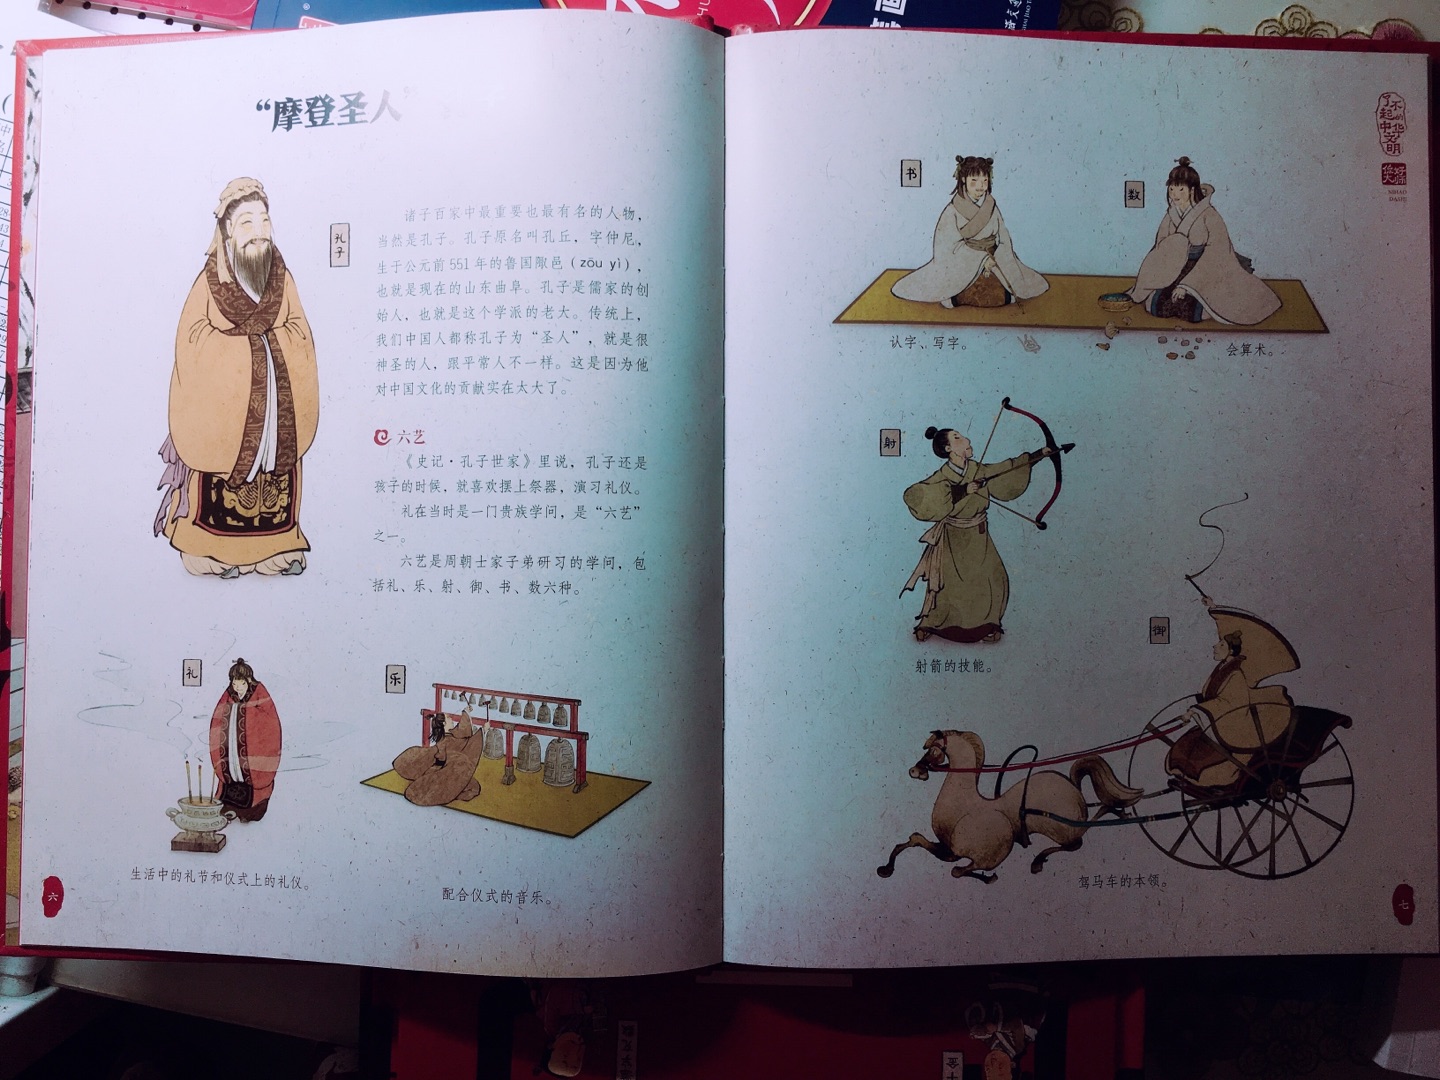 很喜欢蒙曼老师，这套书也很惊艳，要让小朋友多了解中华文化，还要靠他们传承下去呢。